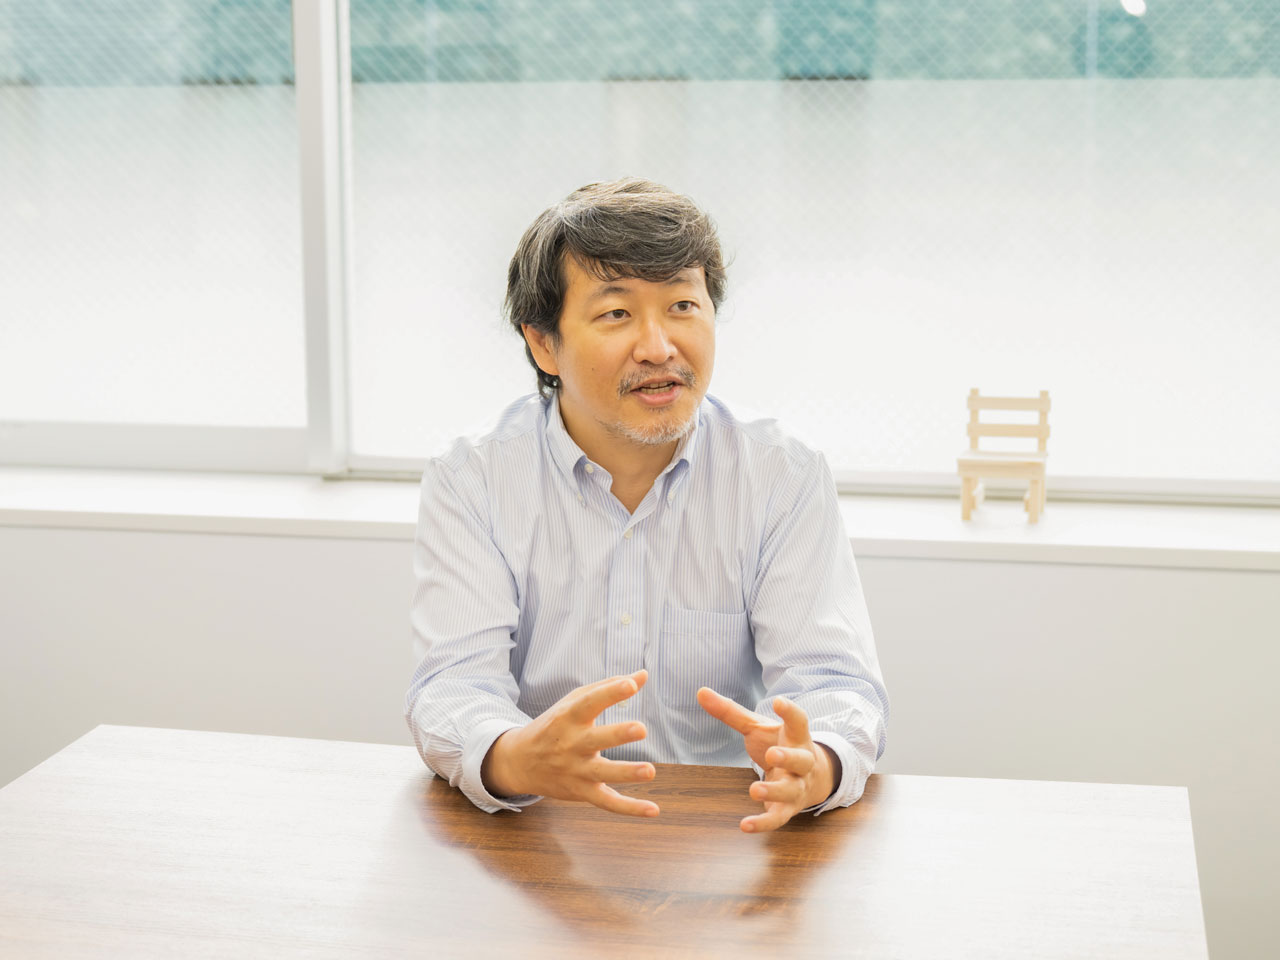 二十数年前の卒論のテーマが『検索エンジン』であり、インターネットによる社会の変化を考えてきた、代表取締役の松尾博周氏。